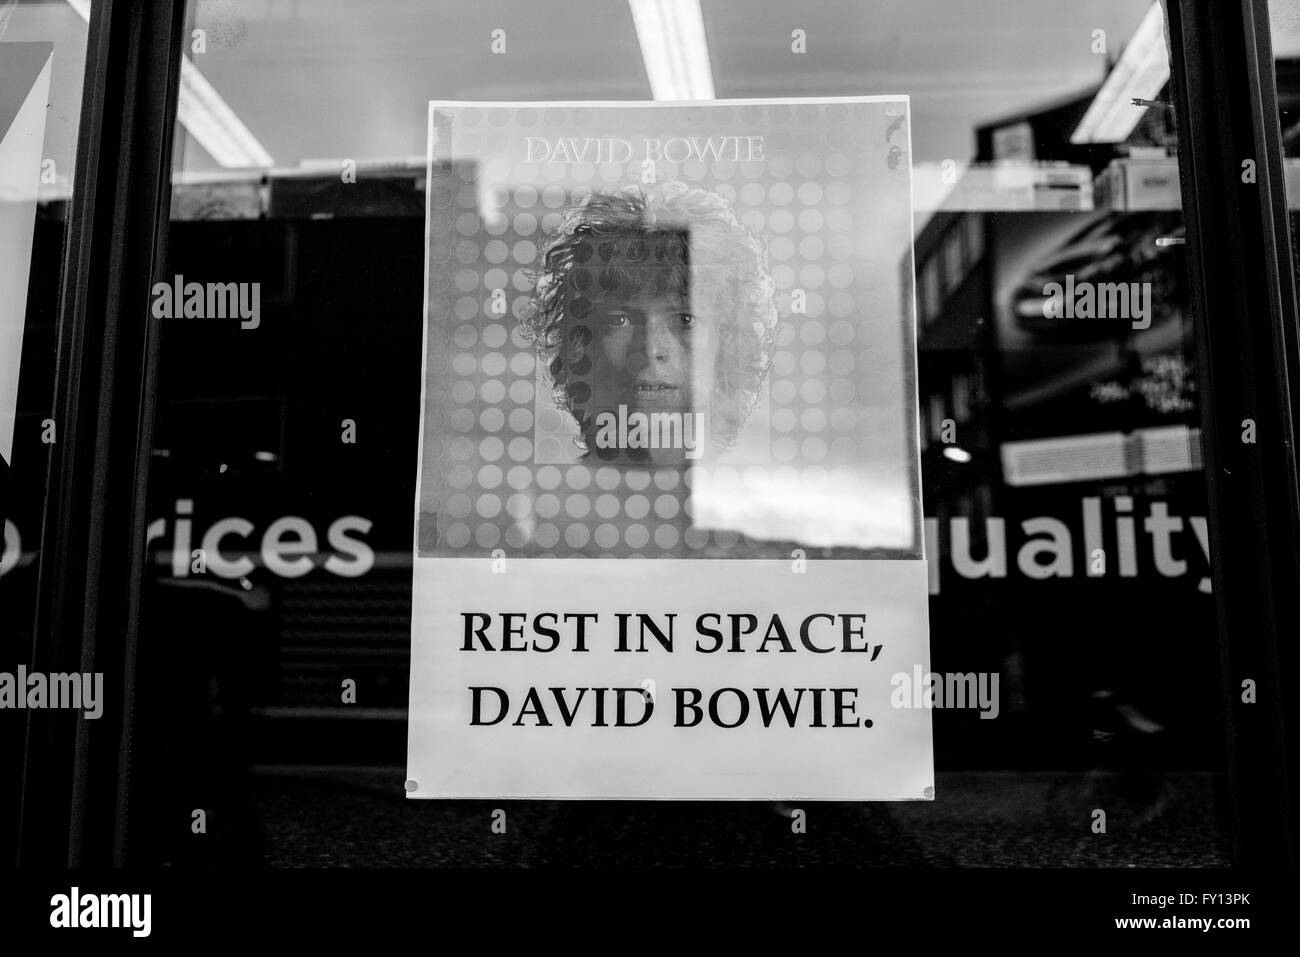 Hommage de l'affiche sur une vitrine en vinyle avec David Bowie portrait et les mots "reste dans l'espace, David Bowie". Banque D'Images